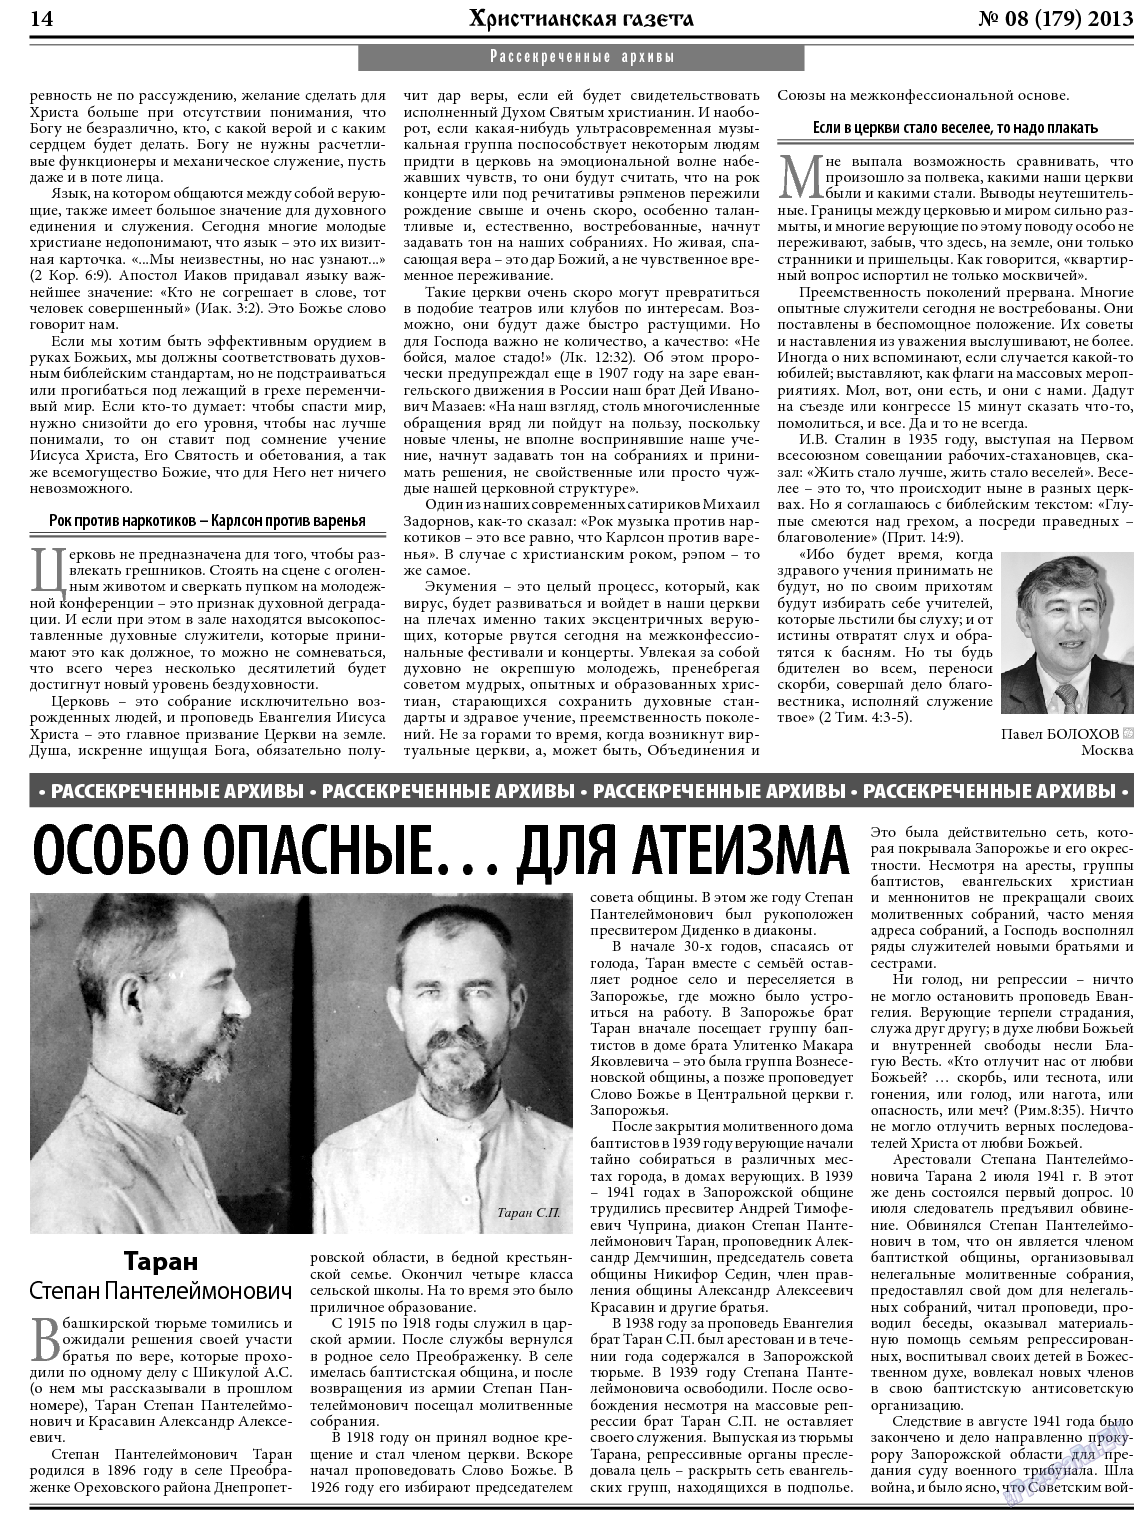 Христианская газета, газета. 2013 №8 стр.22